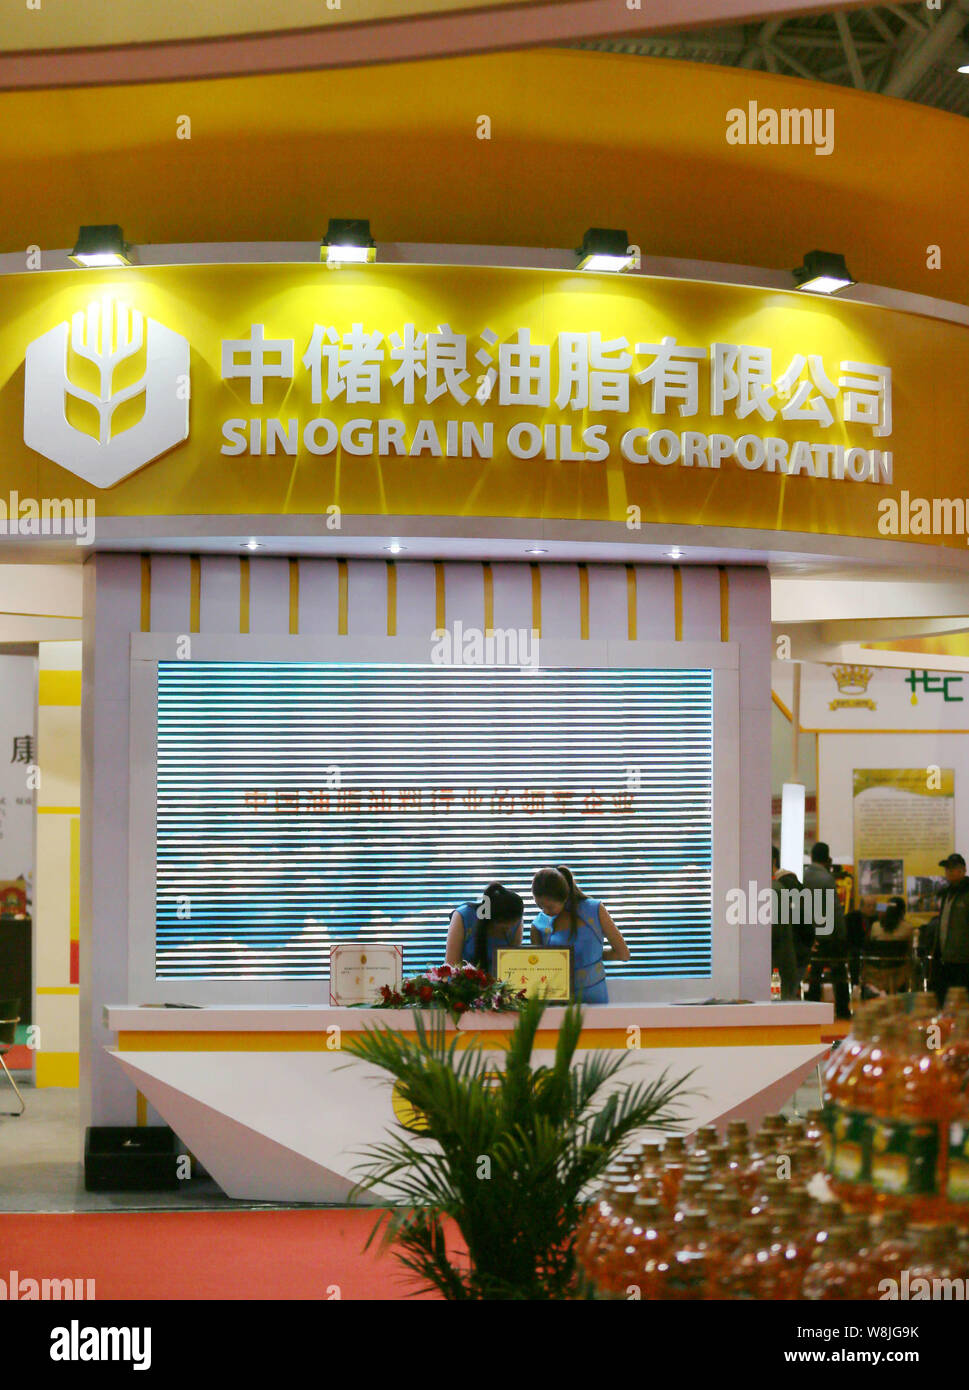 --FILE--employés chinois sont vus sur le stand de Sinograin Oils Corporation, une filiale de Sinograin, également connu sous le nom de réserve de céréales de la Chine Corporatio Banque D'Images